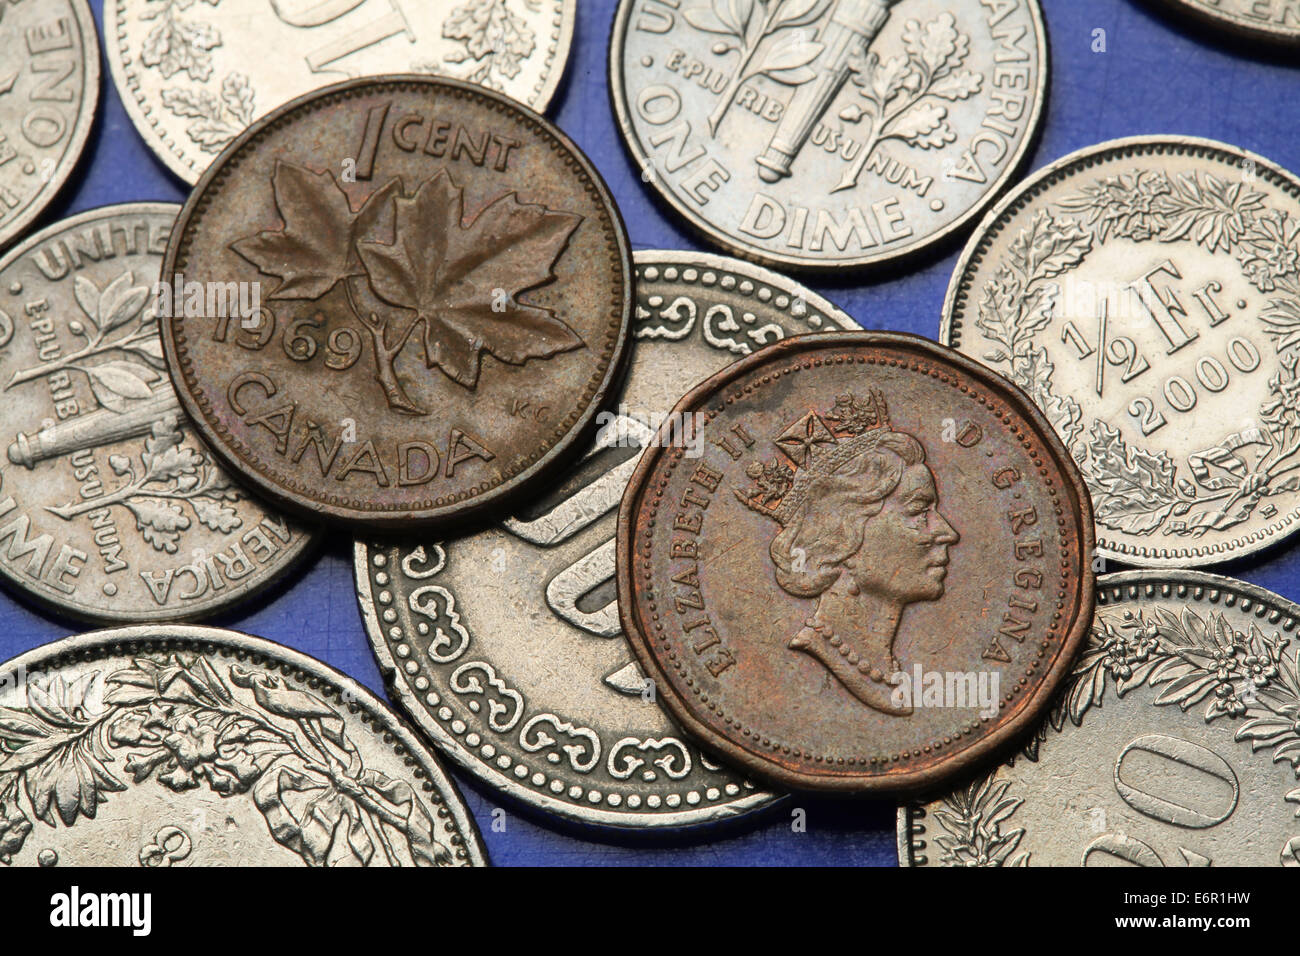 Monedas de Canadá. La reina Isabel II y hojas de arce representado en las monedas de un centavo canadiense. Foto de stock